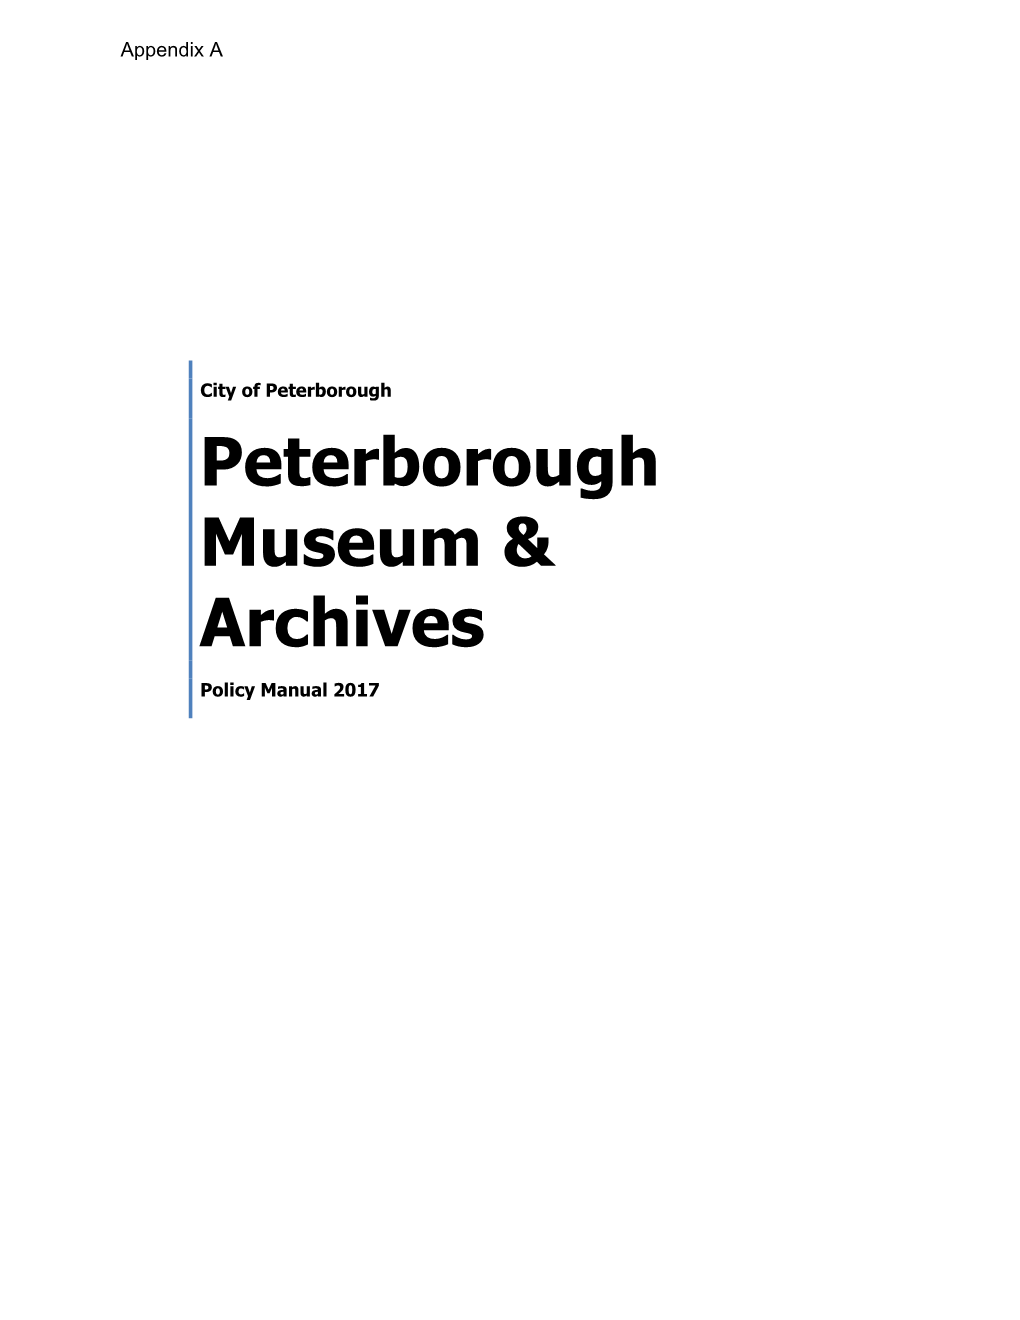 Peterborough Museum & Archives